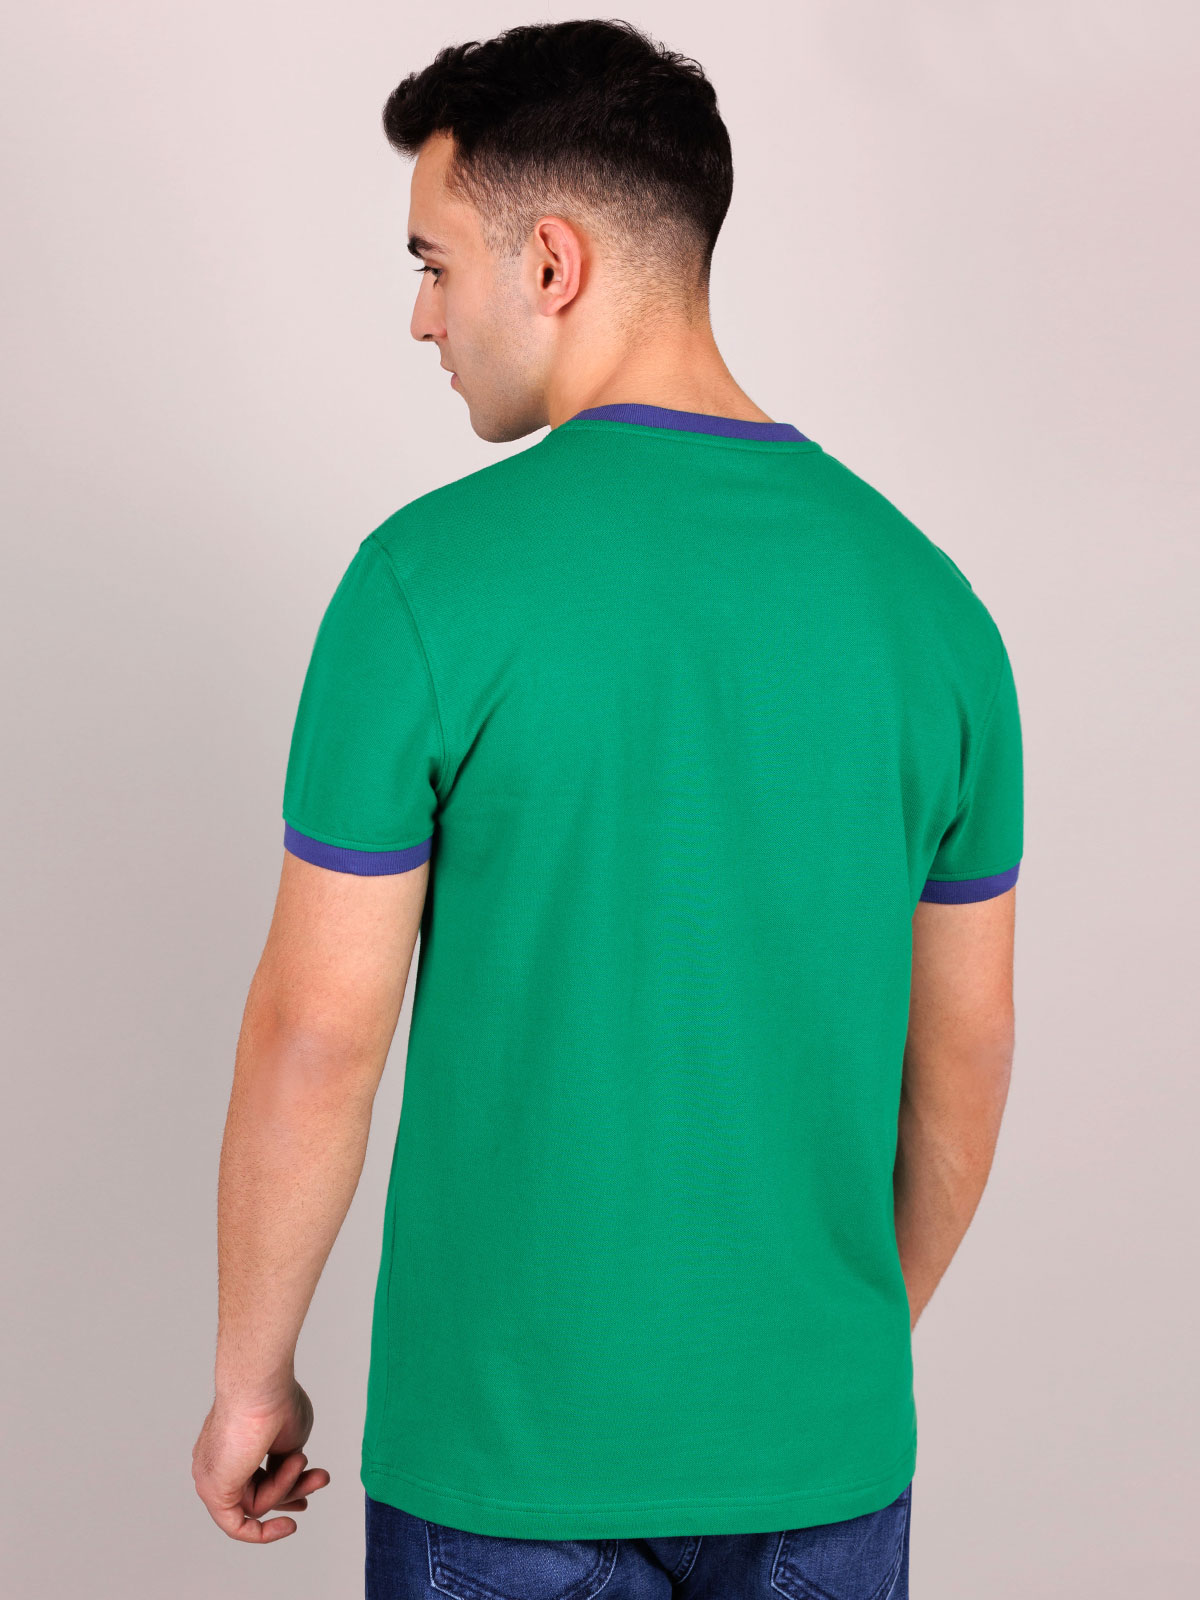 Tshirt σε πράσινο χρώμα - 95367 € 23.62 img4